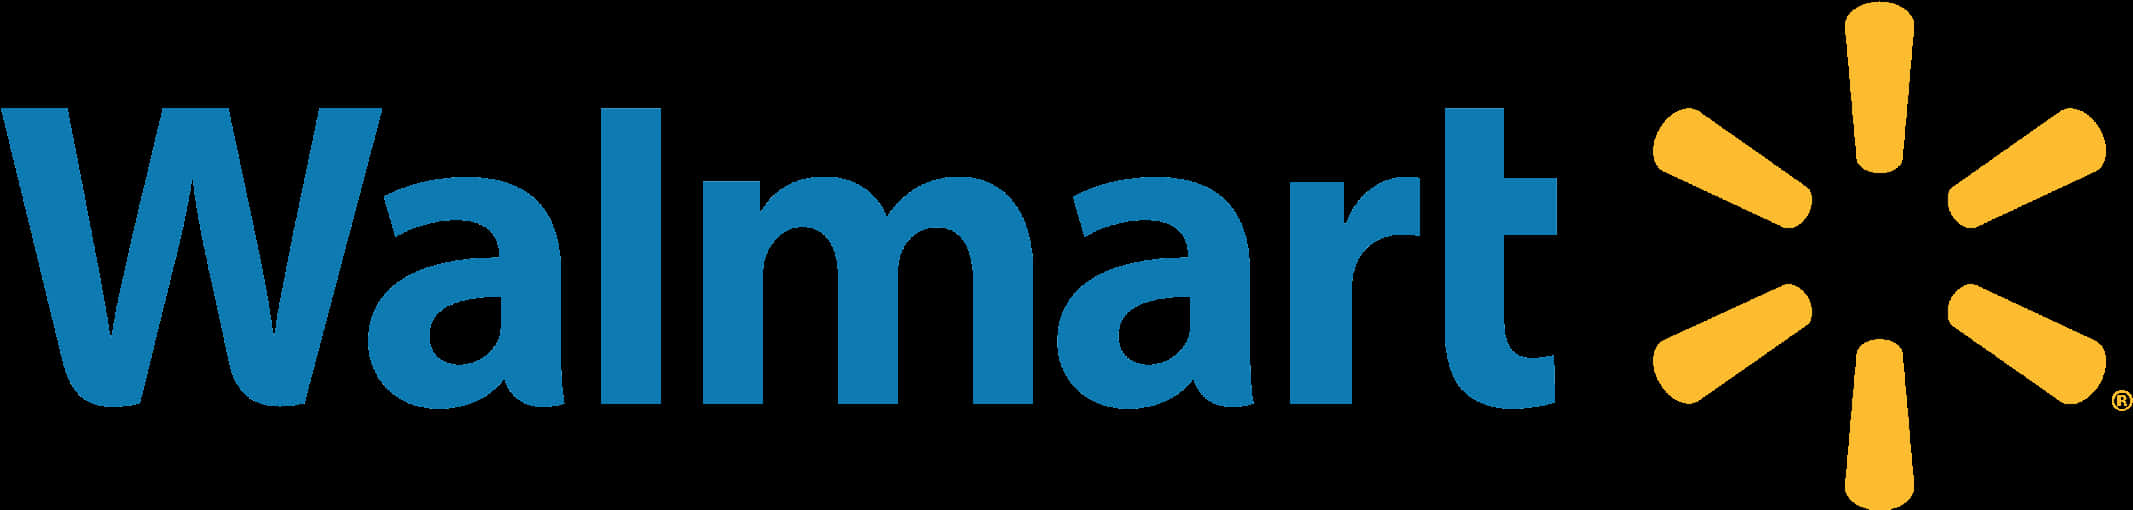 Walmart Logo Branding PNG image